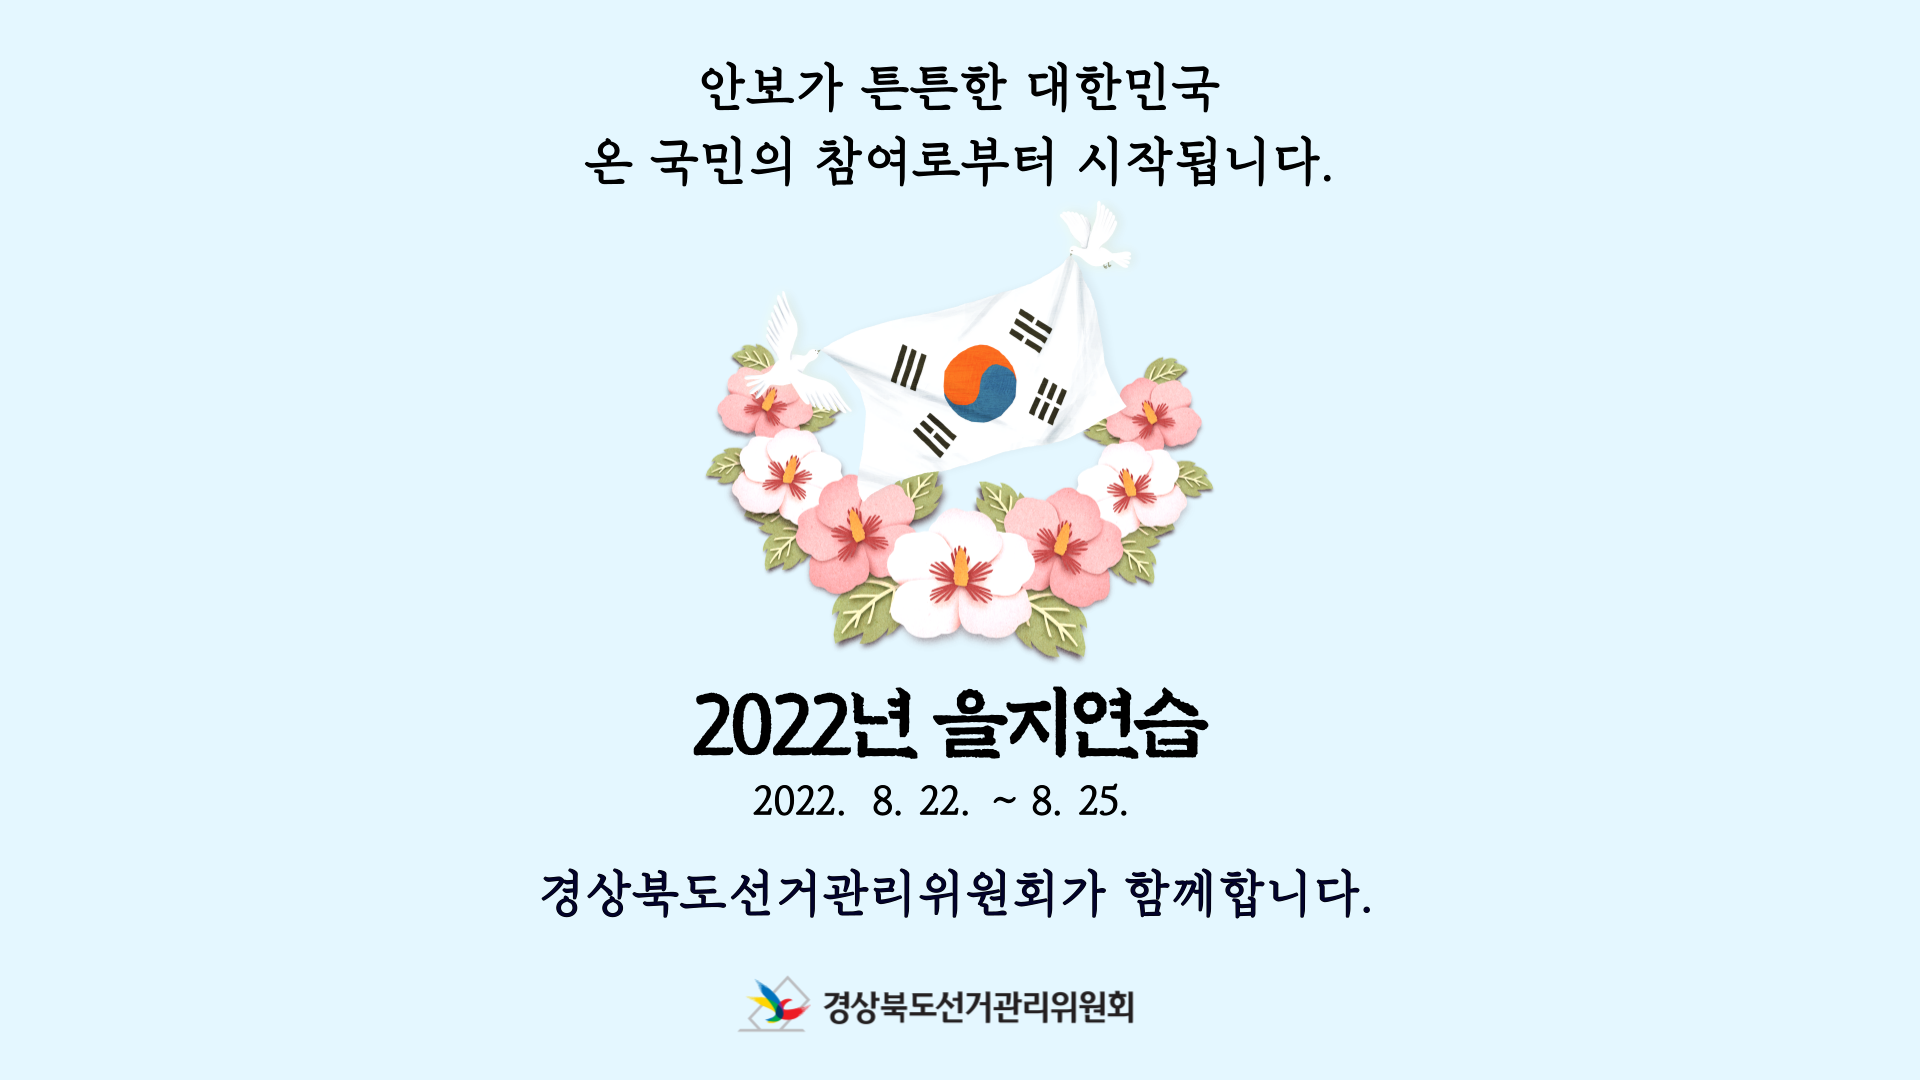 2022년 8월 22일부터 25일까지는 을지연습기간입니다. 안보가 튼튼한 대한민국은 온 국민의 참여로부터 시작됩니다. 2022년 을지연습, 경상북도선거관리위원회가 함께합니다.